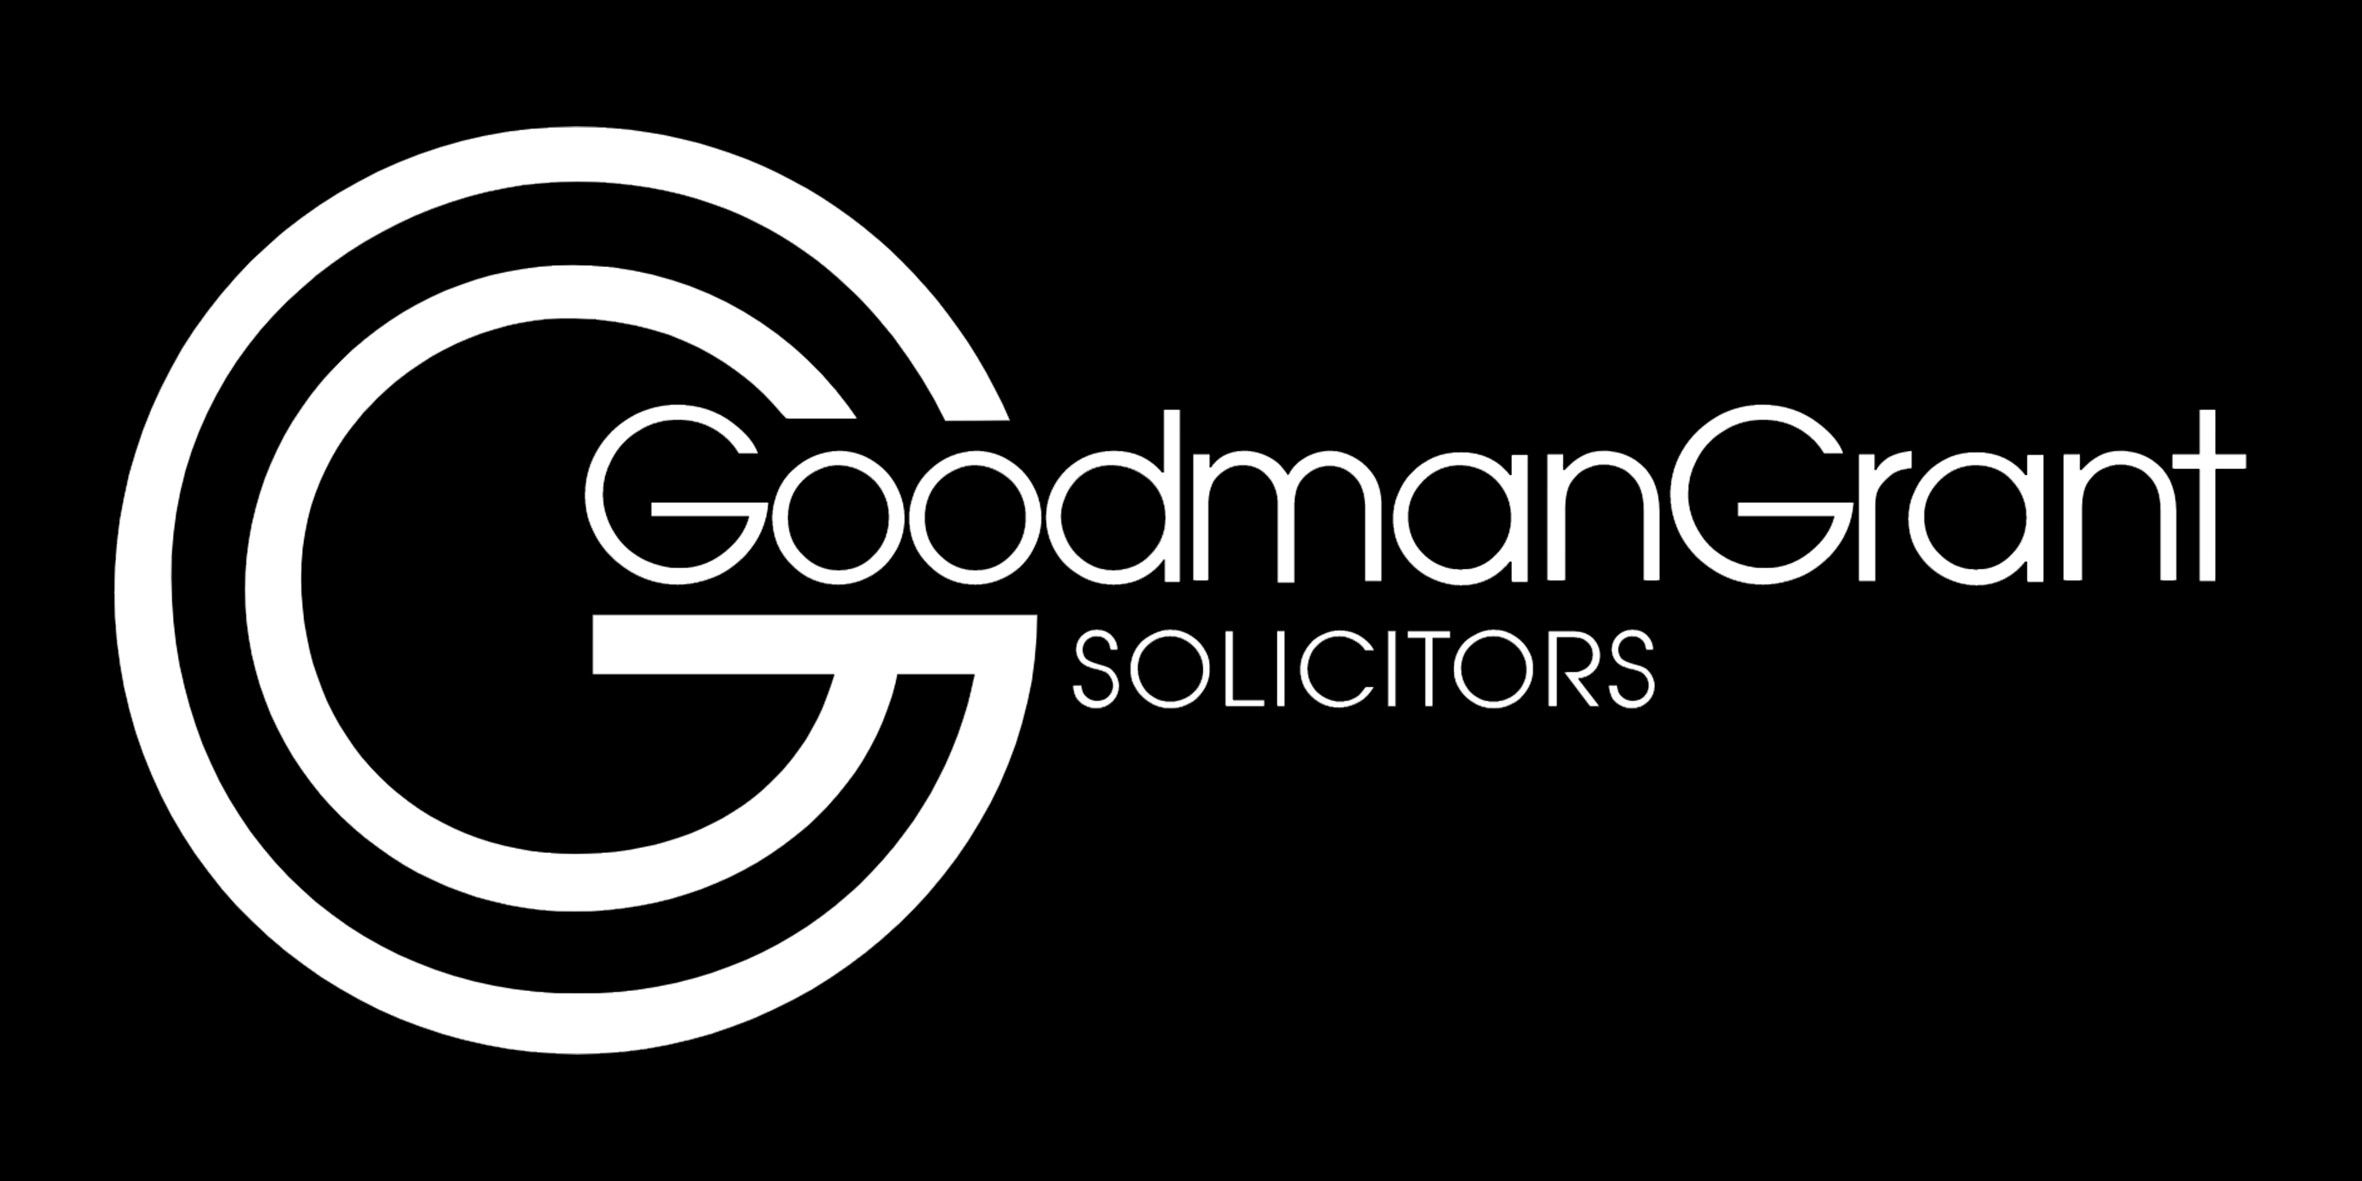 Goodman Grant Solicitors